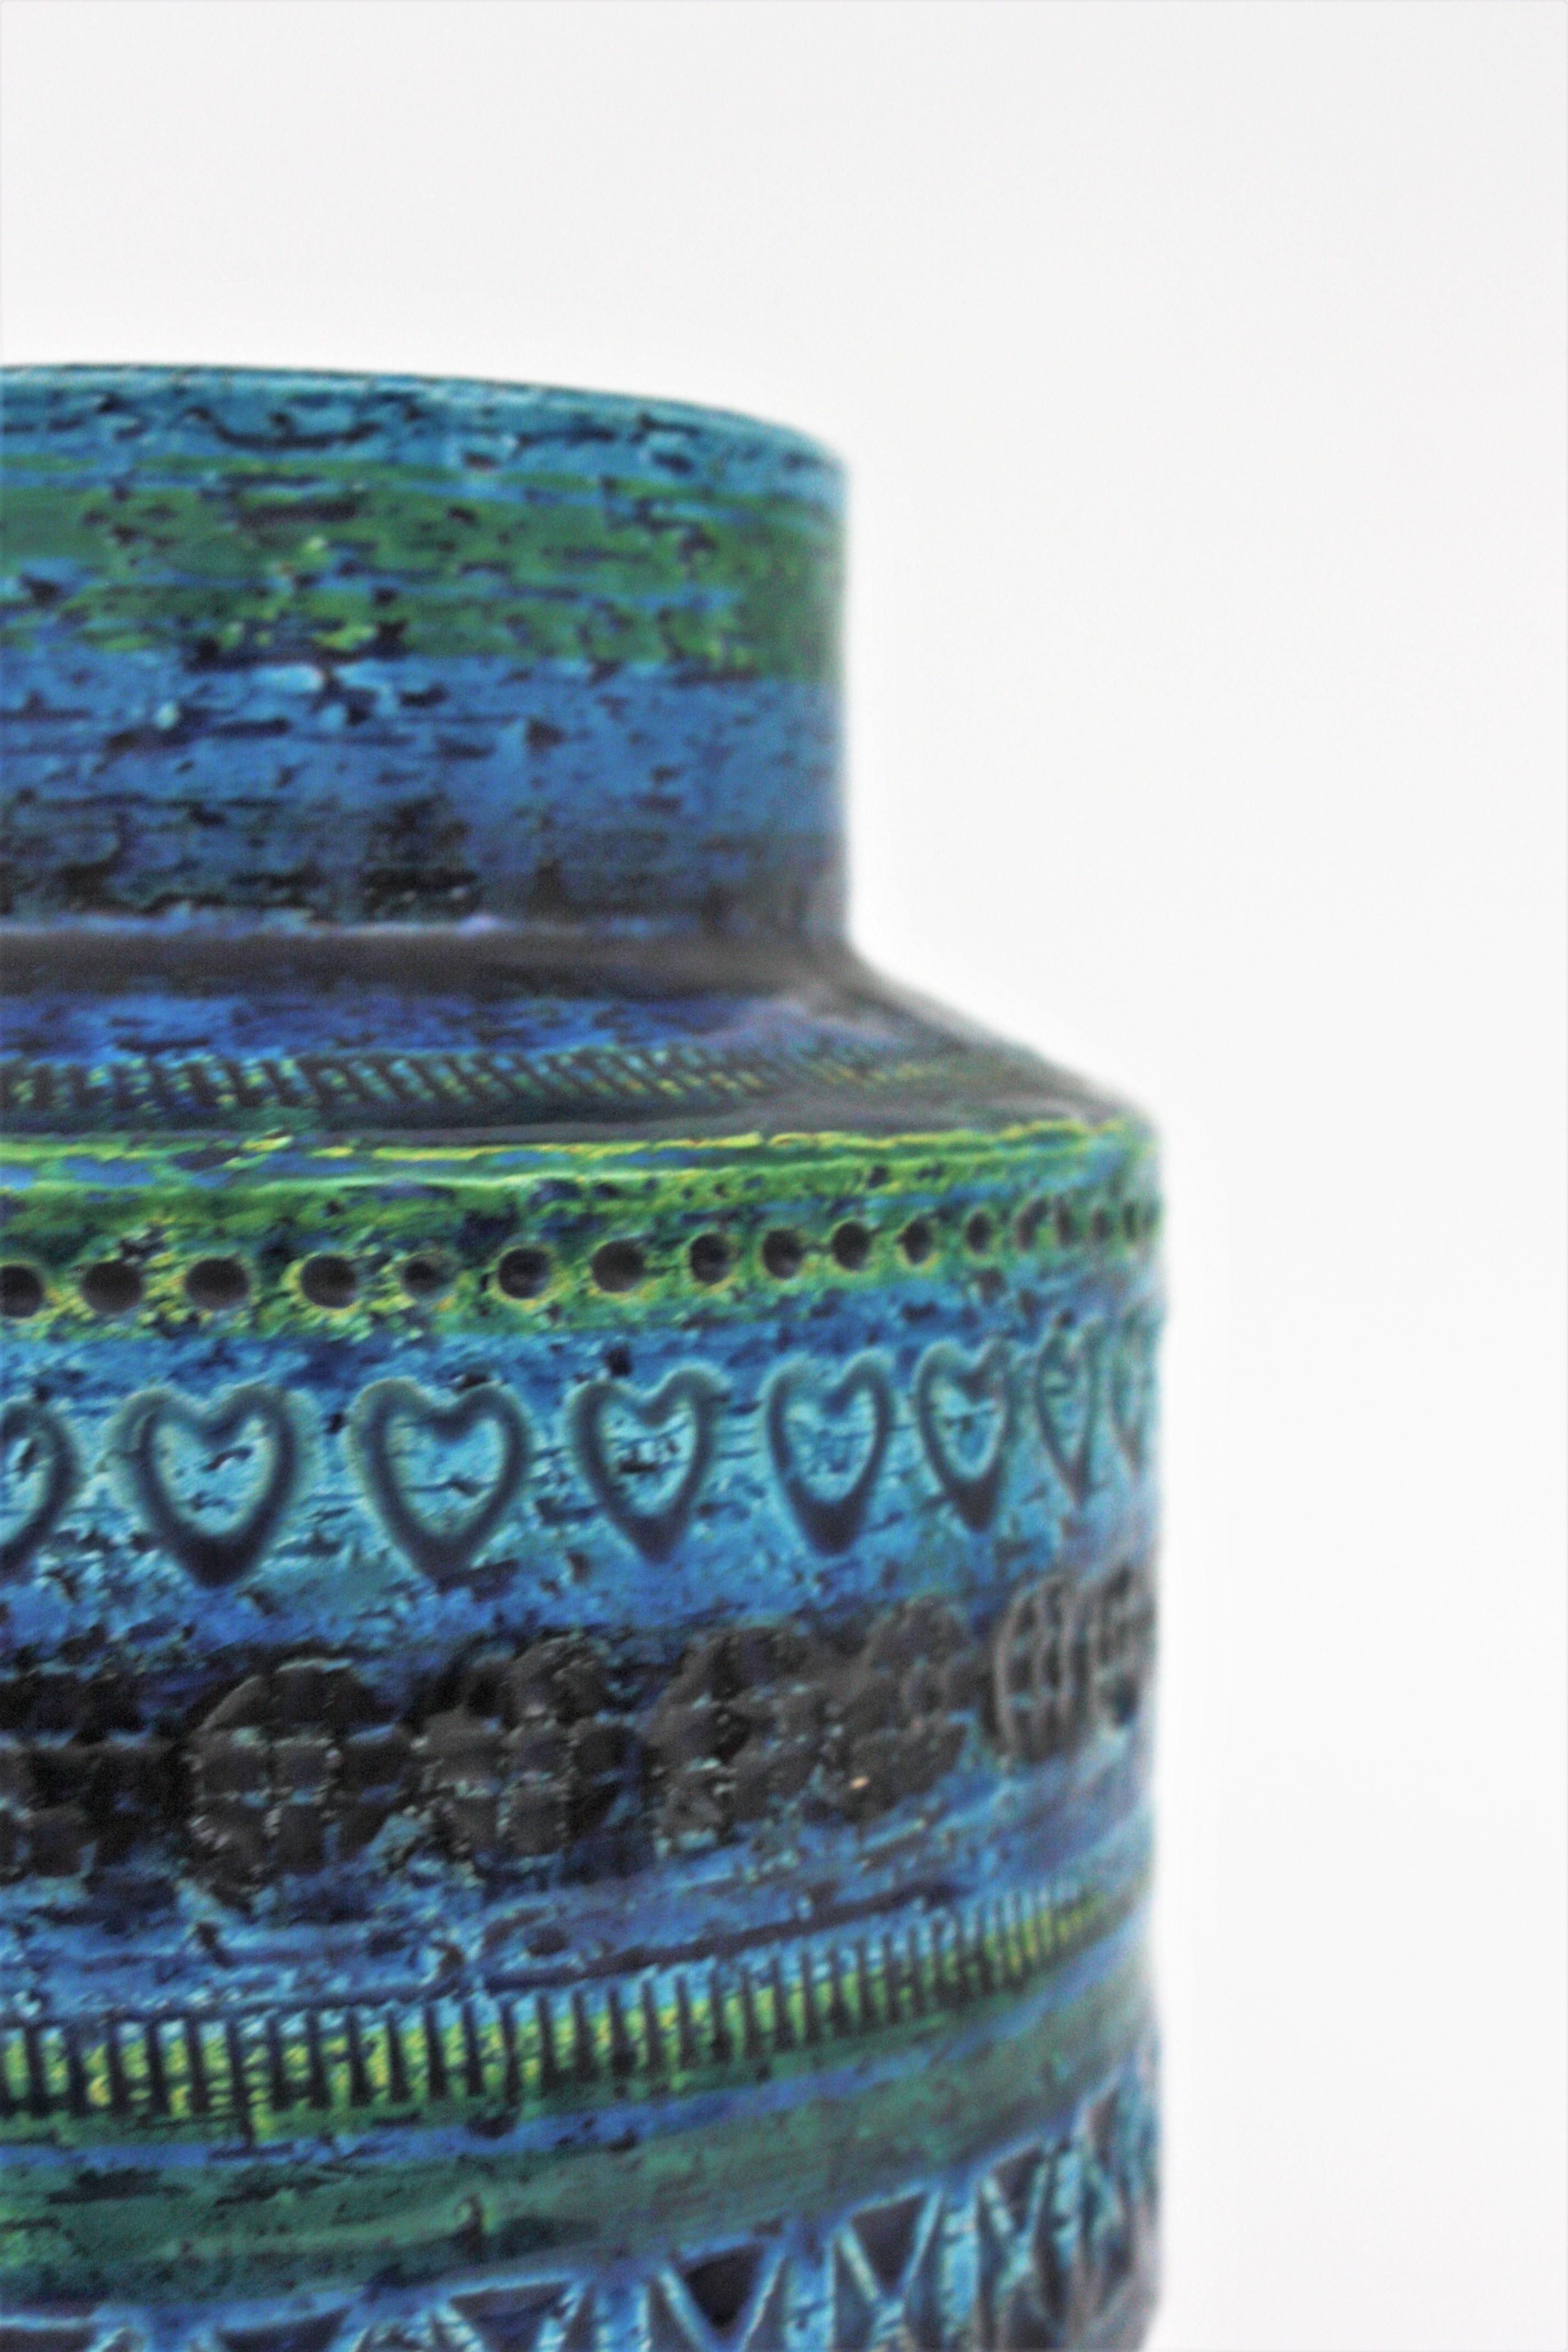 20th Century Bitossi Aldo Londi Rimini Blue Ceramic Vase on Sterling Silver Base, 1960s For Sale